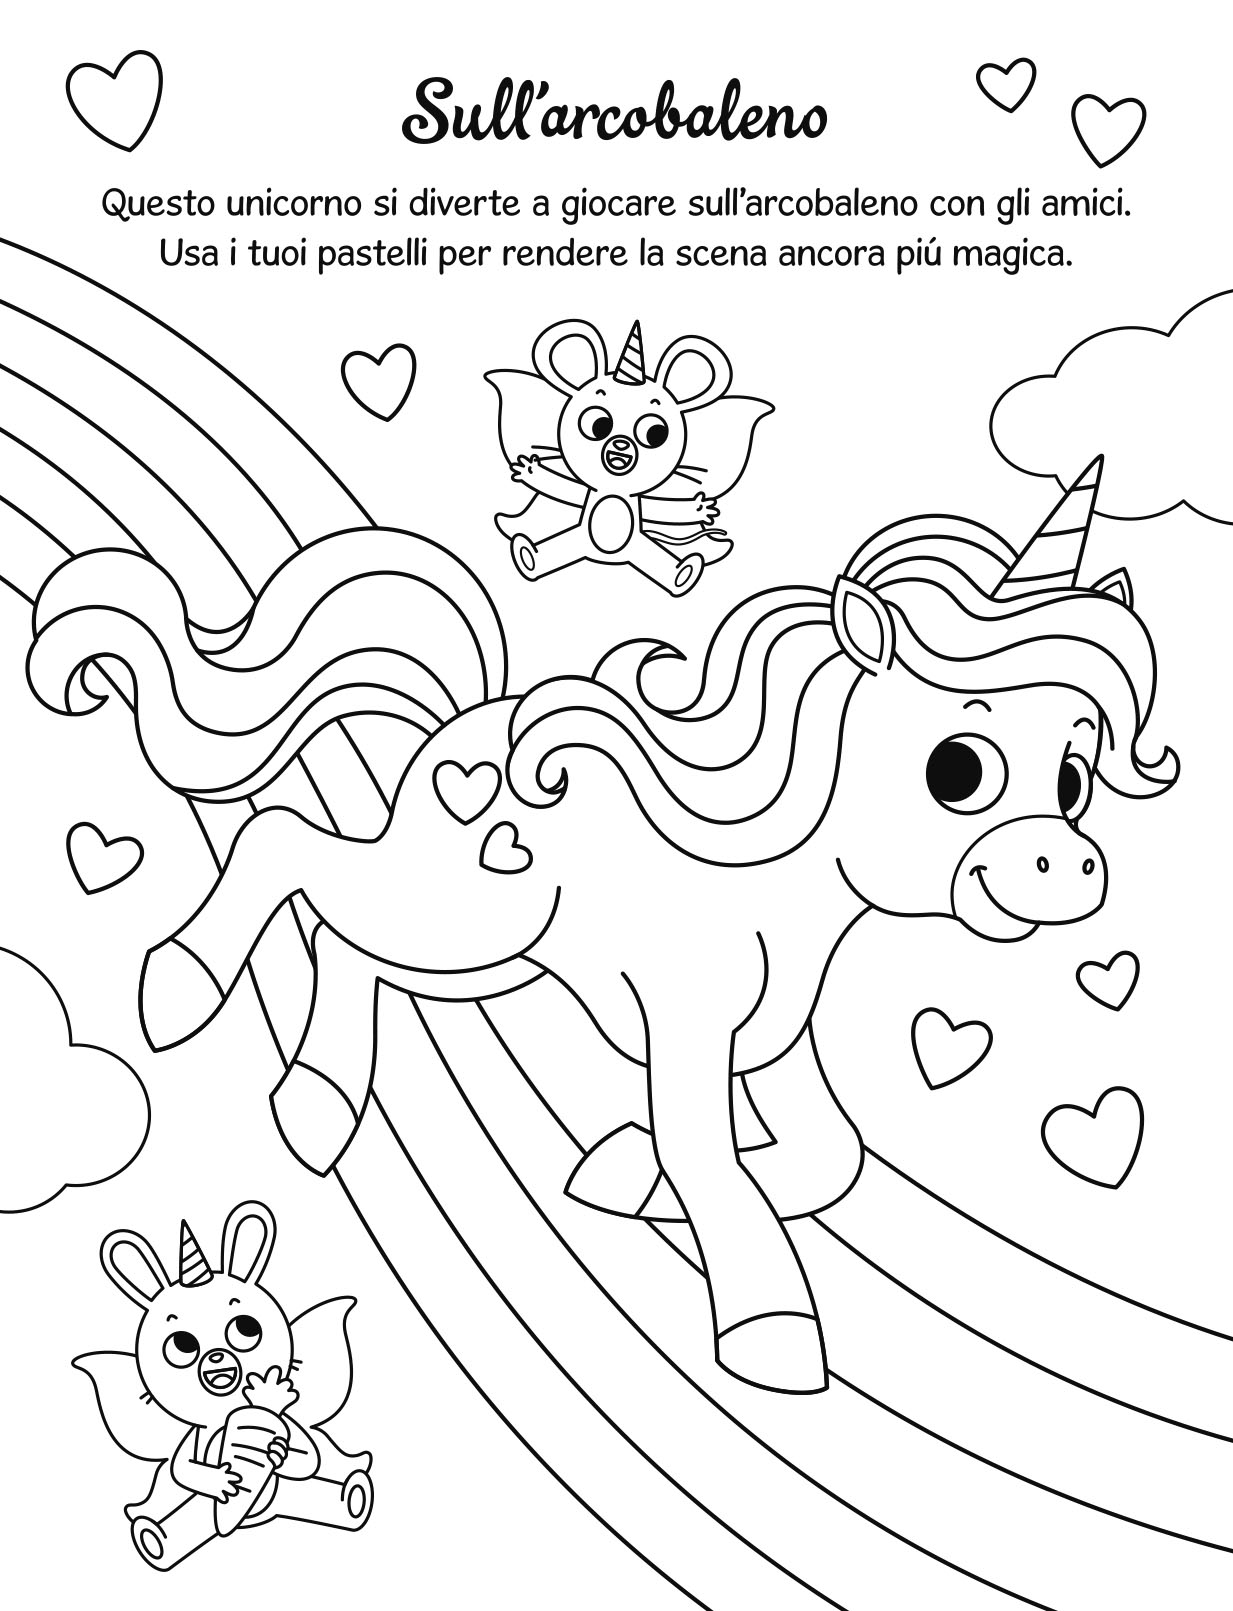 Magici unicorni da colorare - AA.VV./Barbieri